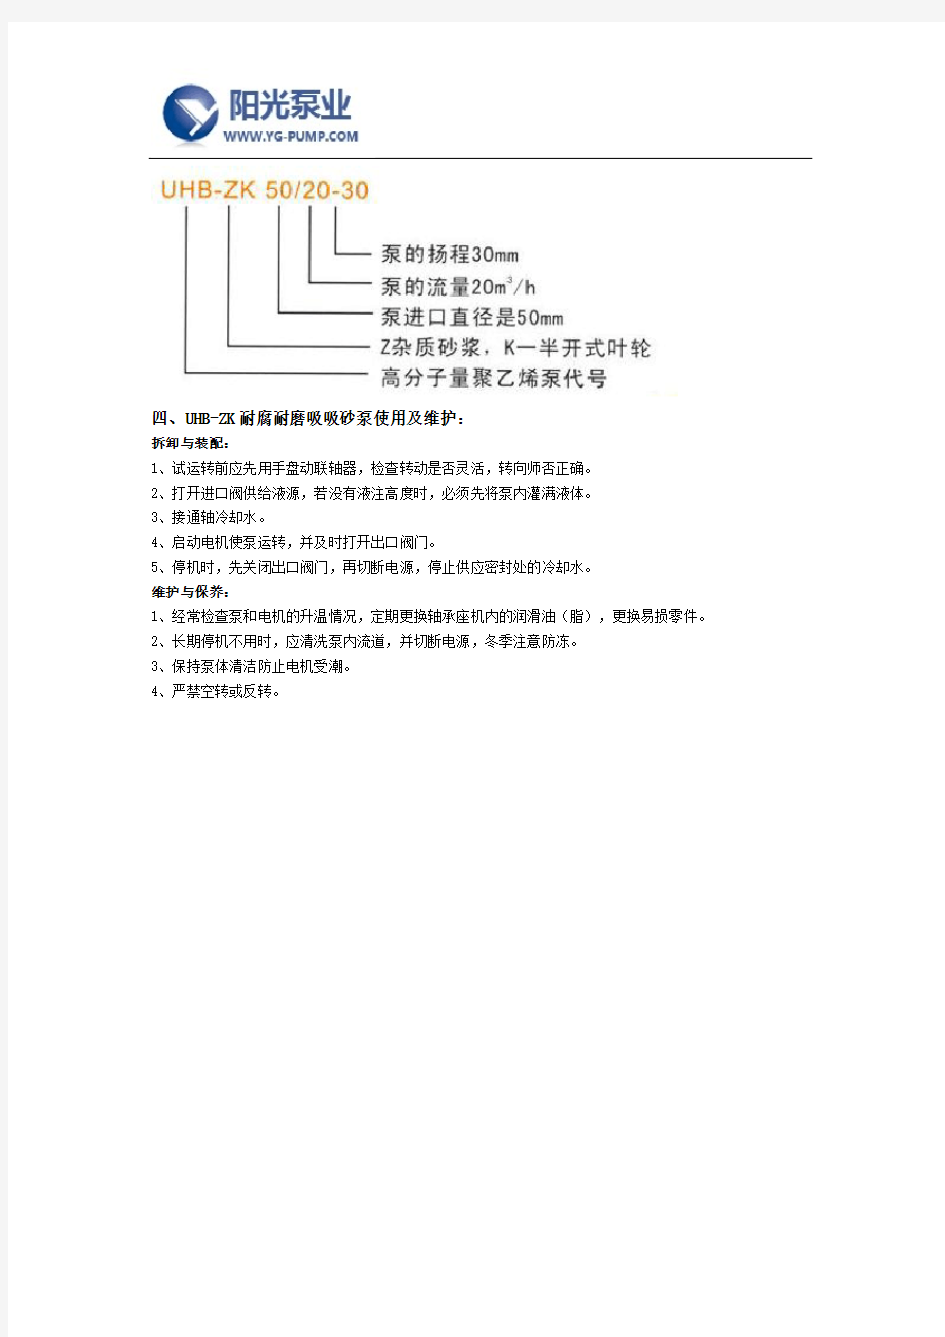 UHB-ZK耐腐耐磨吸吸砂泵厂家十大品牌-上海阳光泵业